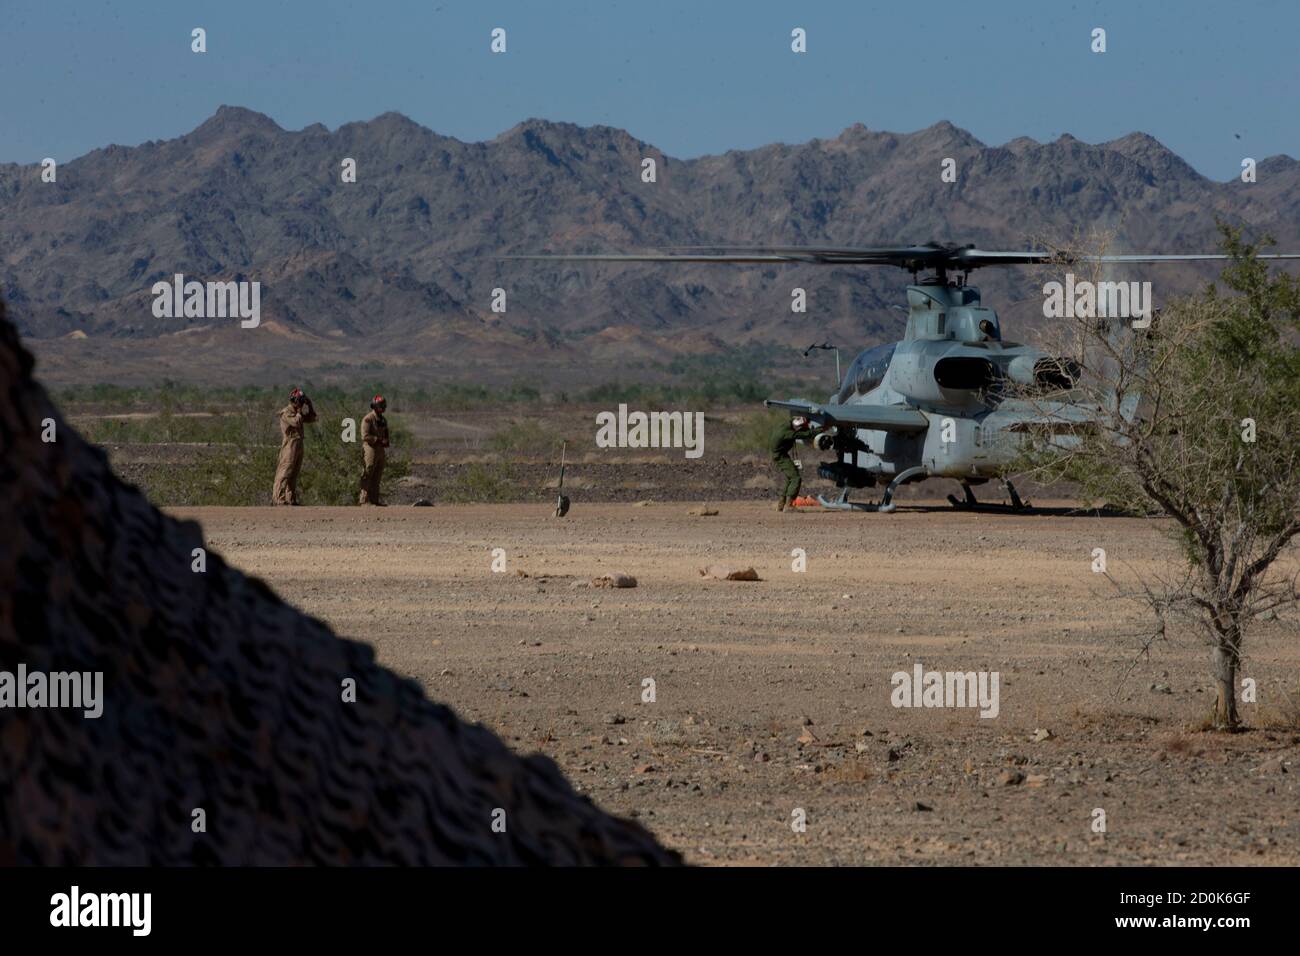 Un Viper del corpo marino degli Stati Uniti AH-1Z assegnato alle armi dell'aviazione marina e alle tattiche lo Squadrone uno conduce le applicazioni pratiche del punto di rifornimento e di armamento in avanti durante il corso di istruttore di armi e tattiche (WTI) 1-21 alla Landing zone Bull Assault, California, 28 settembre 2020. Il corso WTI è un evento di formazione di sette settimane ospitato da MAWTS-1, che fornisce qualifiche standardizzate per supportare la formazione e la preparazione dell'aviazione marina, e assiste nello sviluppo e nell'utilizzo di tattiche di armi per l'aviazione. (STATI UNITI Corpo marino foto di Lance CPL Shannon Gibson) Foto Stock